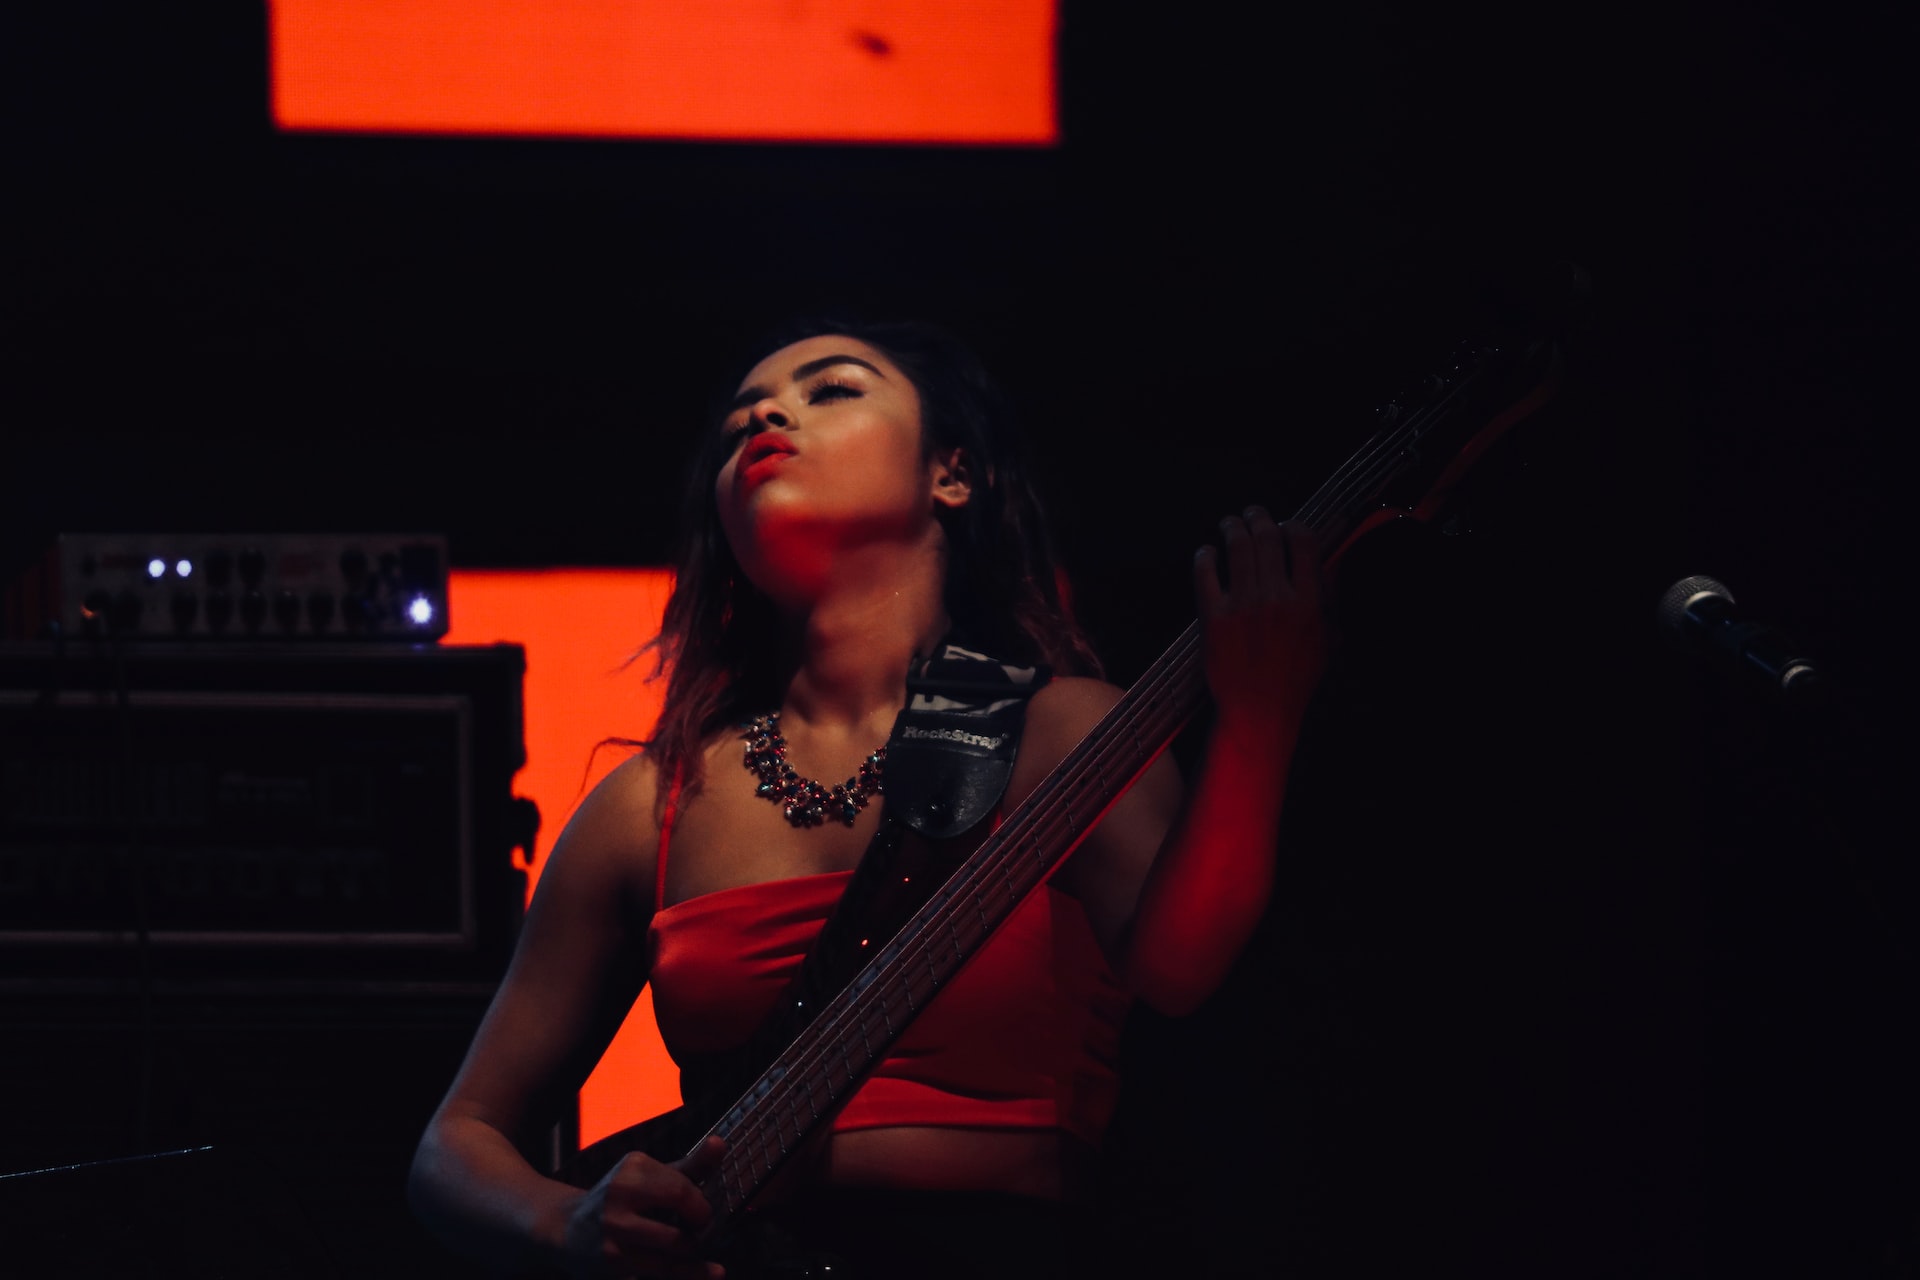 An Indian bass guitarist at a concert.